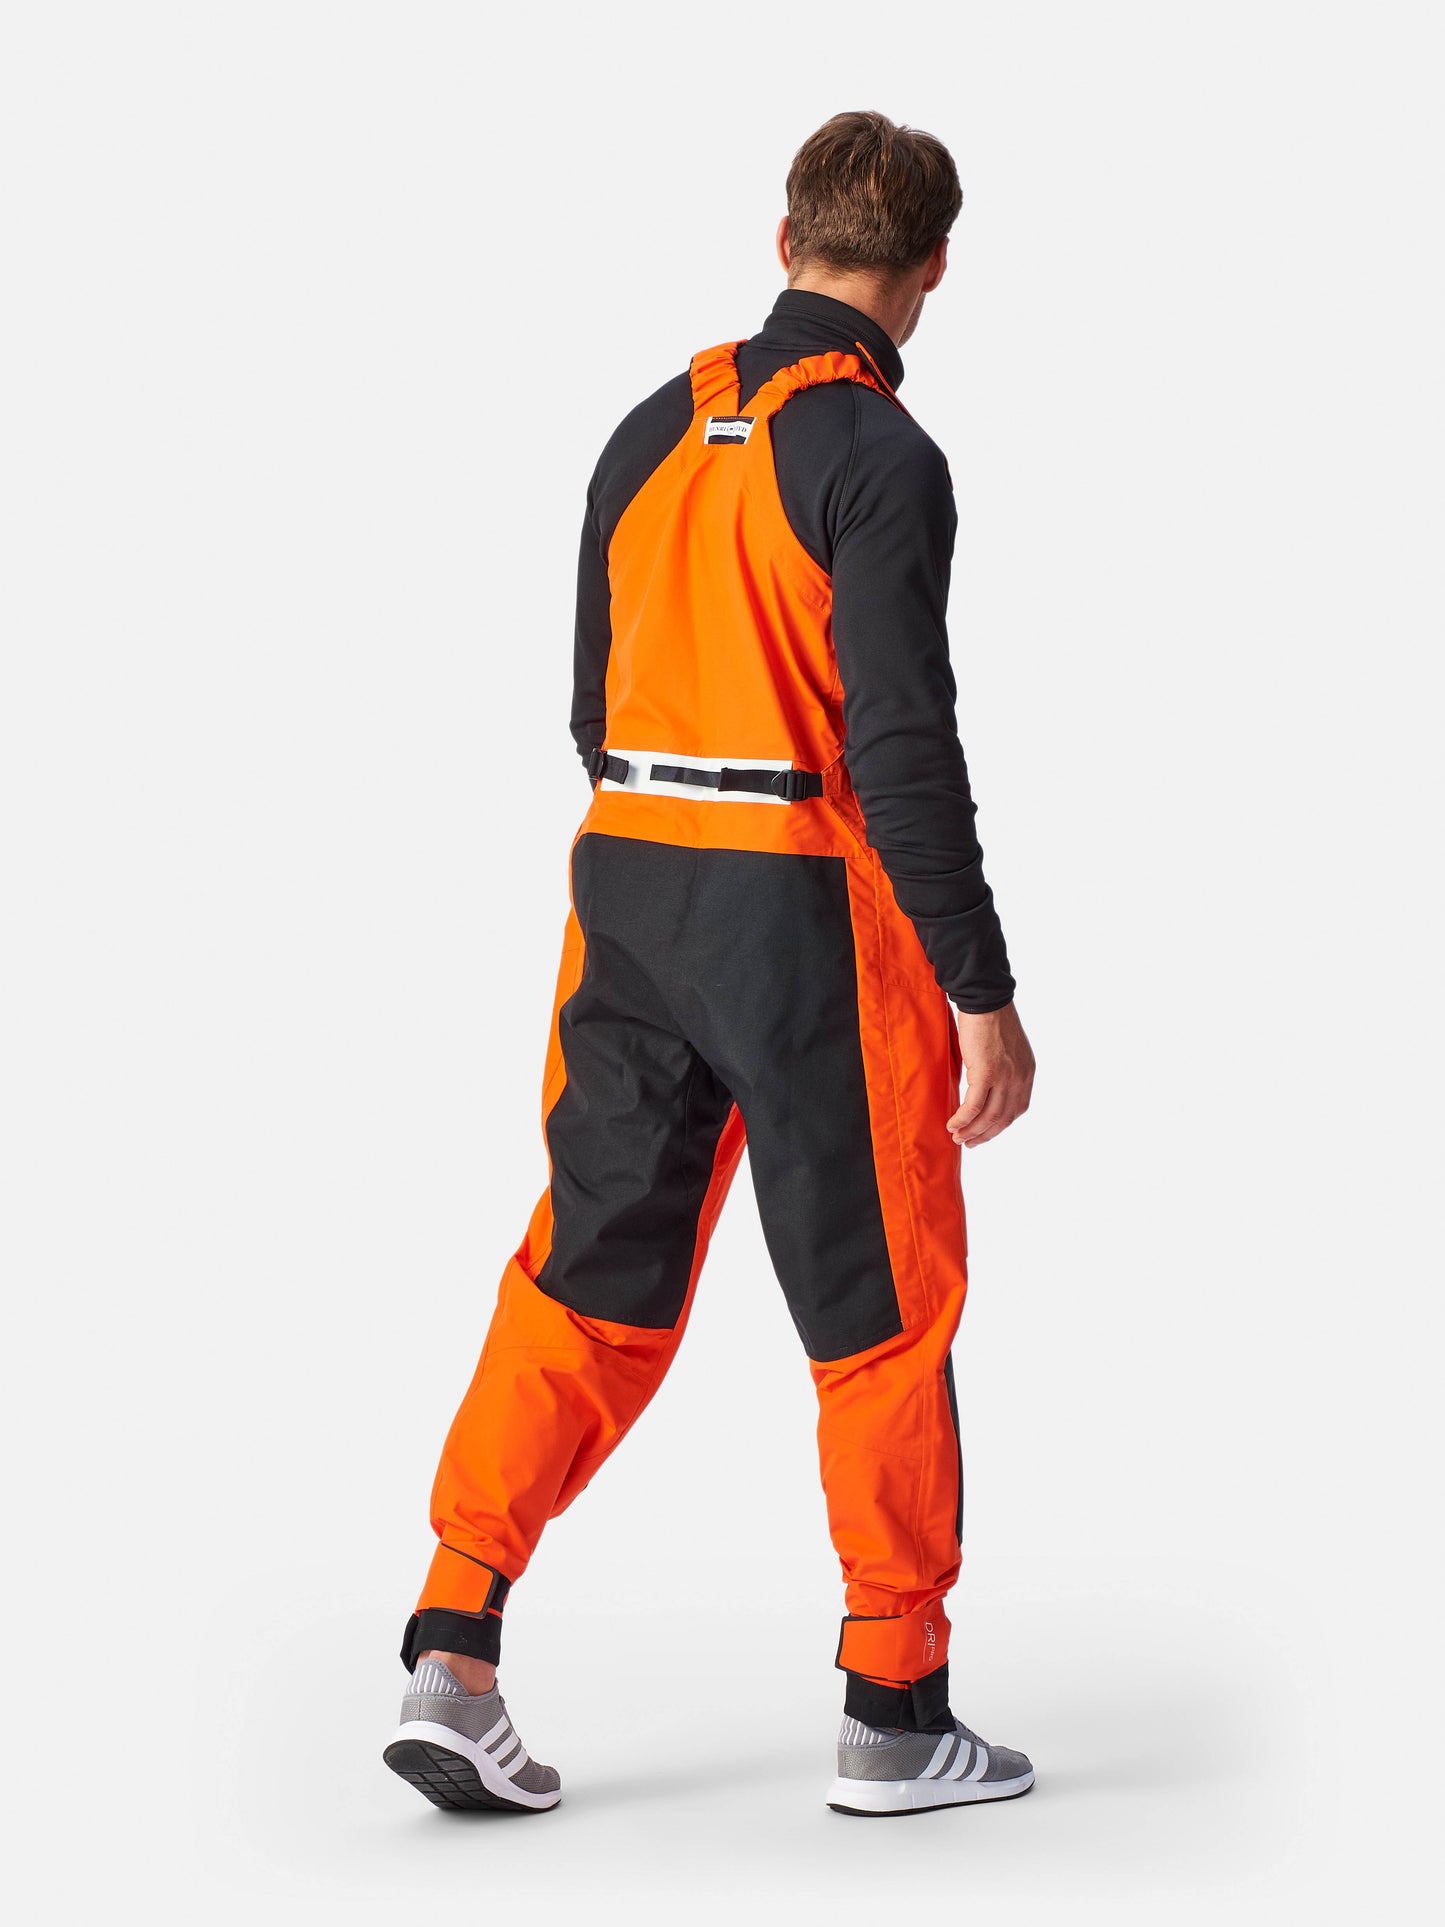 Men's Elite Hi-Fit - Power Orange